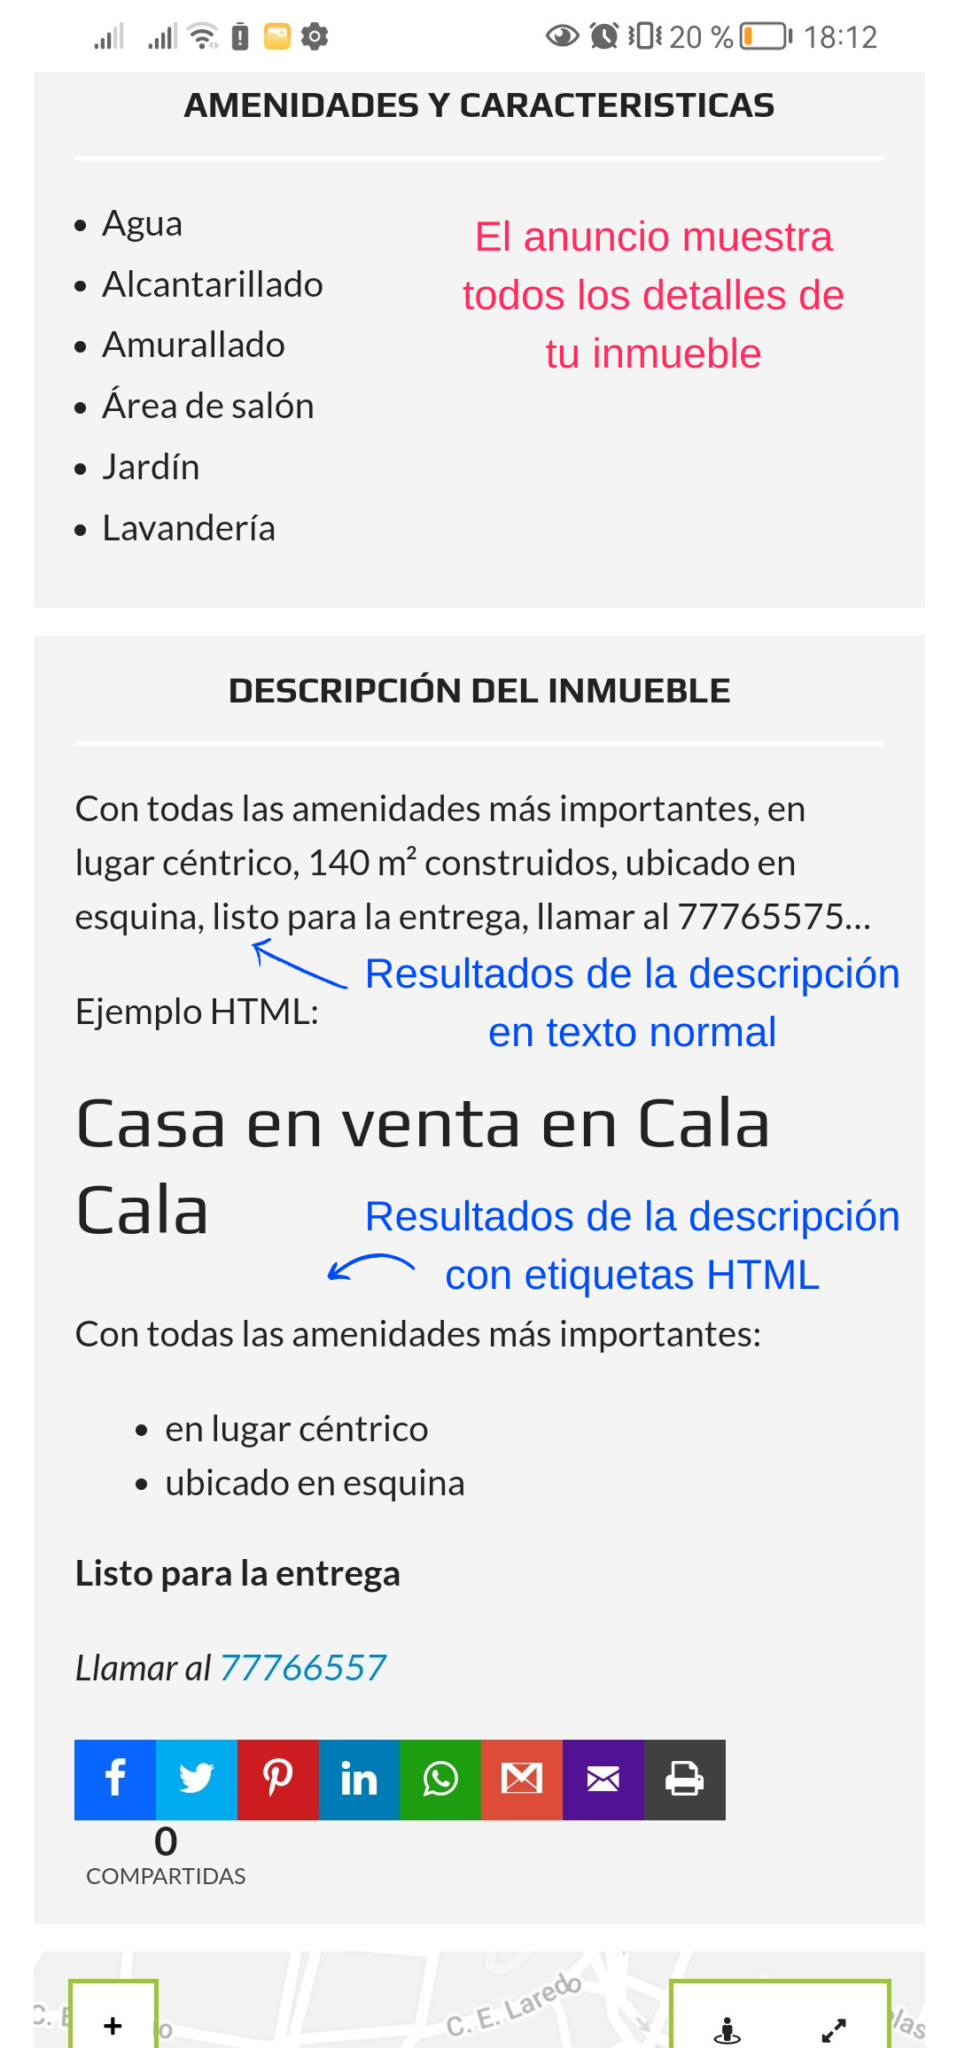 Apariencia de la descripción del inmueble en el anuncio, en formato de texto normal y con etiquetas HTML